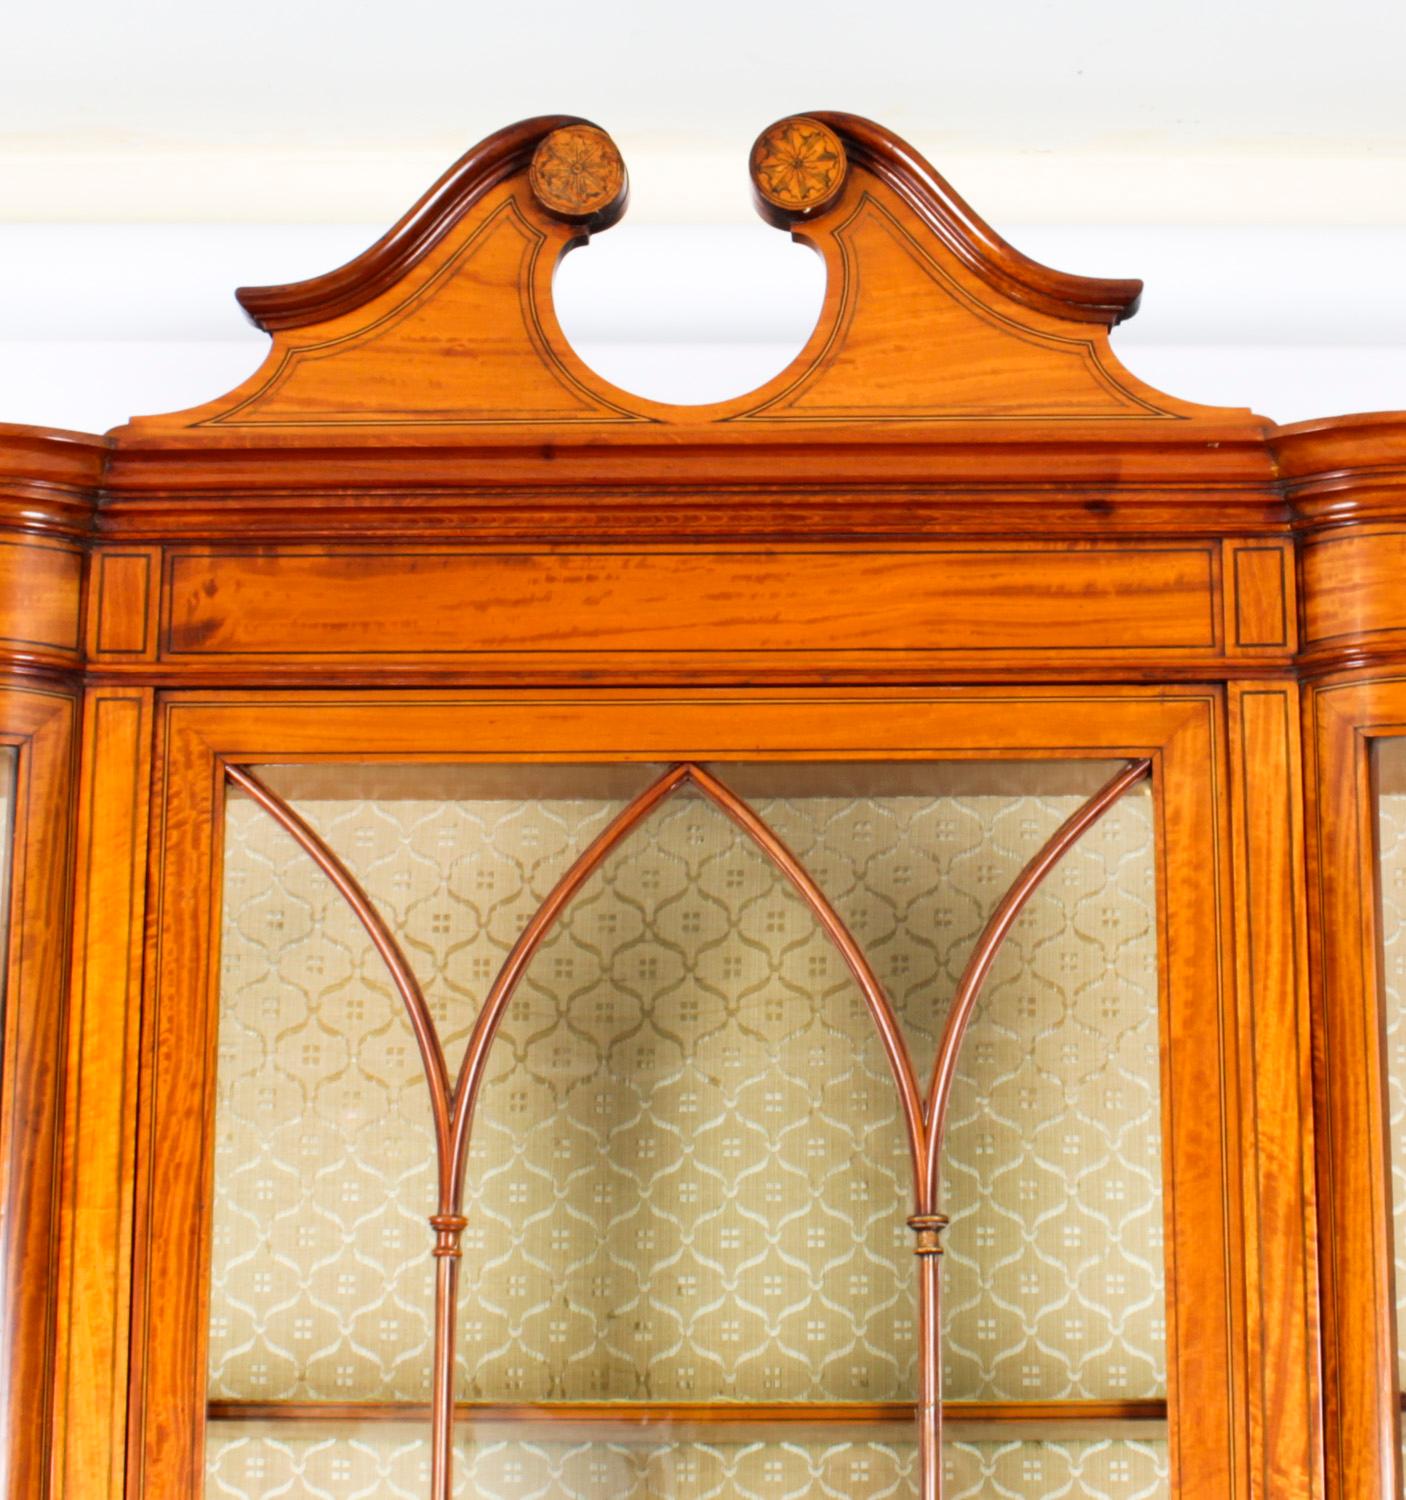 Superbe vitrine anglaise Edouardienne en bois de serpentin, datant de 1890,

La partie supérieure est surmontée d'une étonnante corniche à fronton brisé et comporte une grande porte centrale à vitrage astragale, flanquée de chaque côté d'un verre